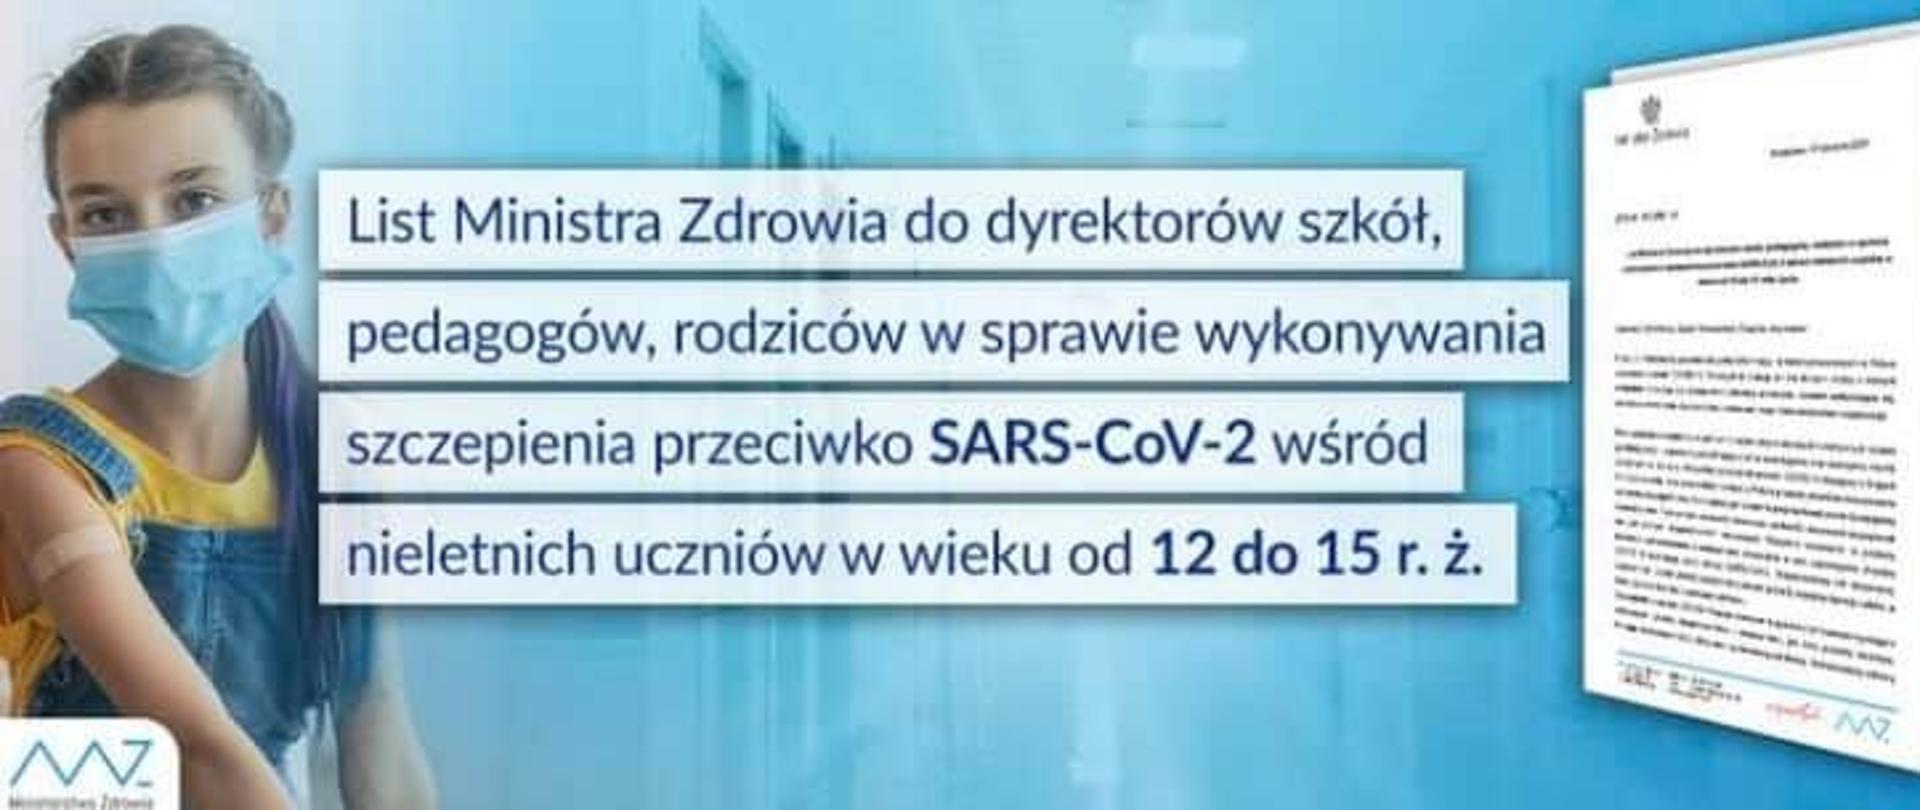 List_Ministra_Zdrowia_w_sprawie_wykonywania_szczepień_przeciwko_SARS-CoV-2_wśród_uczniów